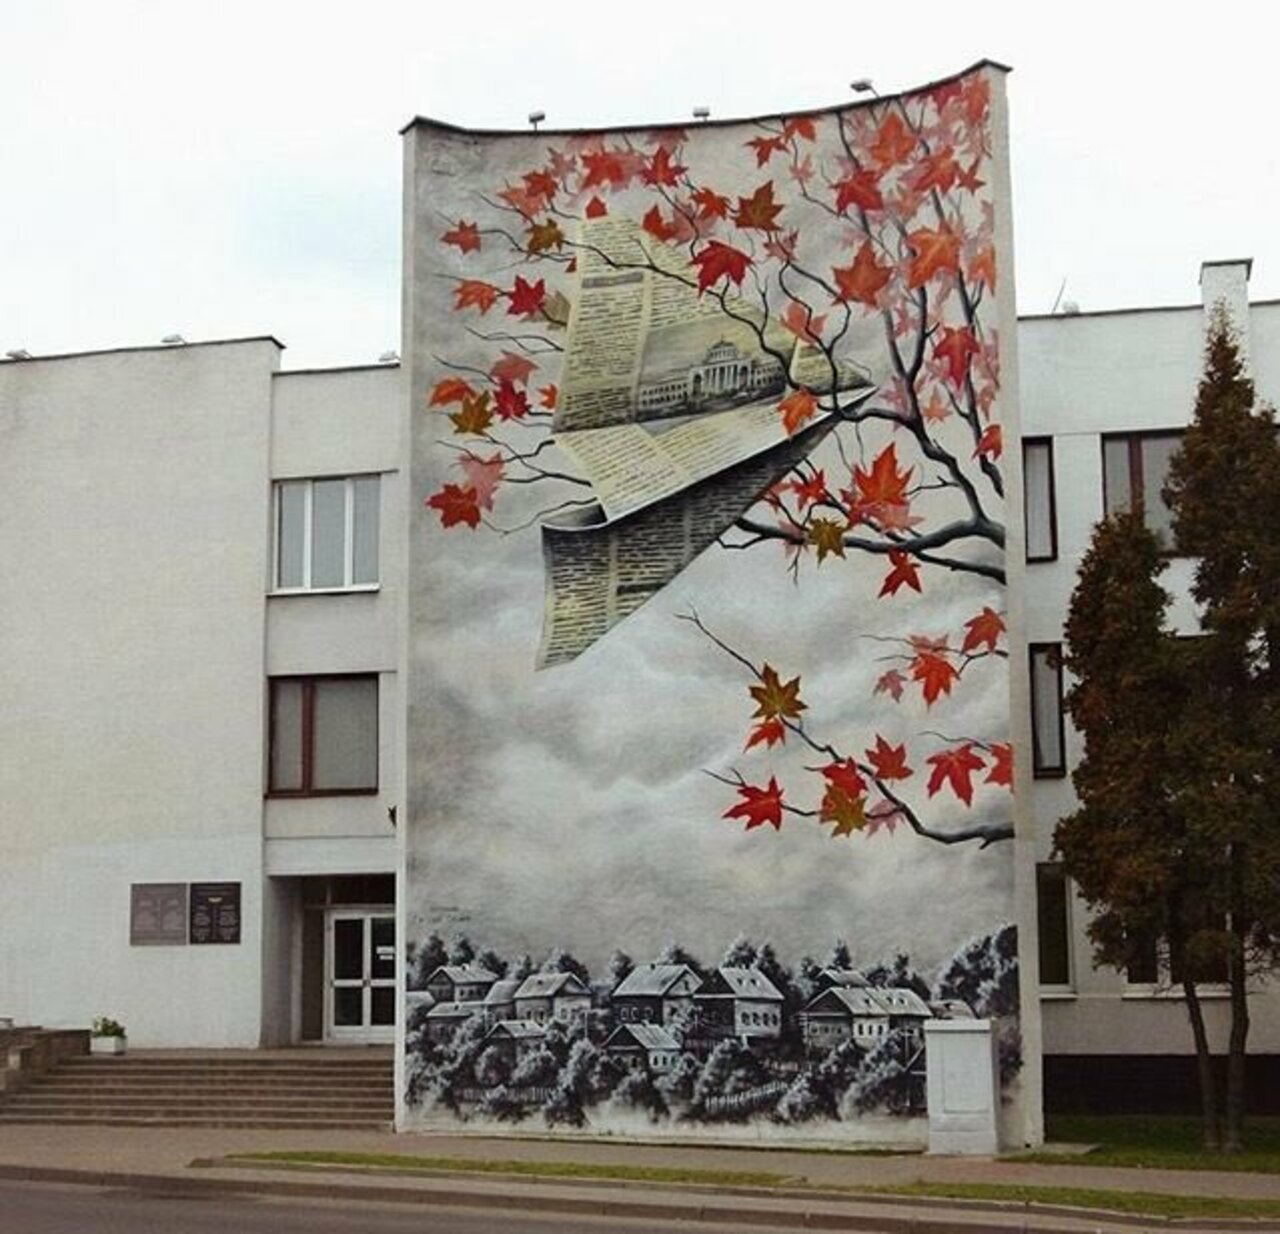 New Street Art by MUTUS in Belarus 

#art #graffiti #mural #streetart https://t.co/LEA9bJ62wz